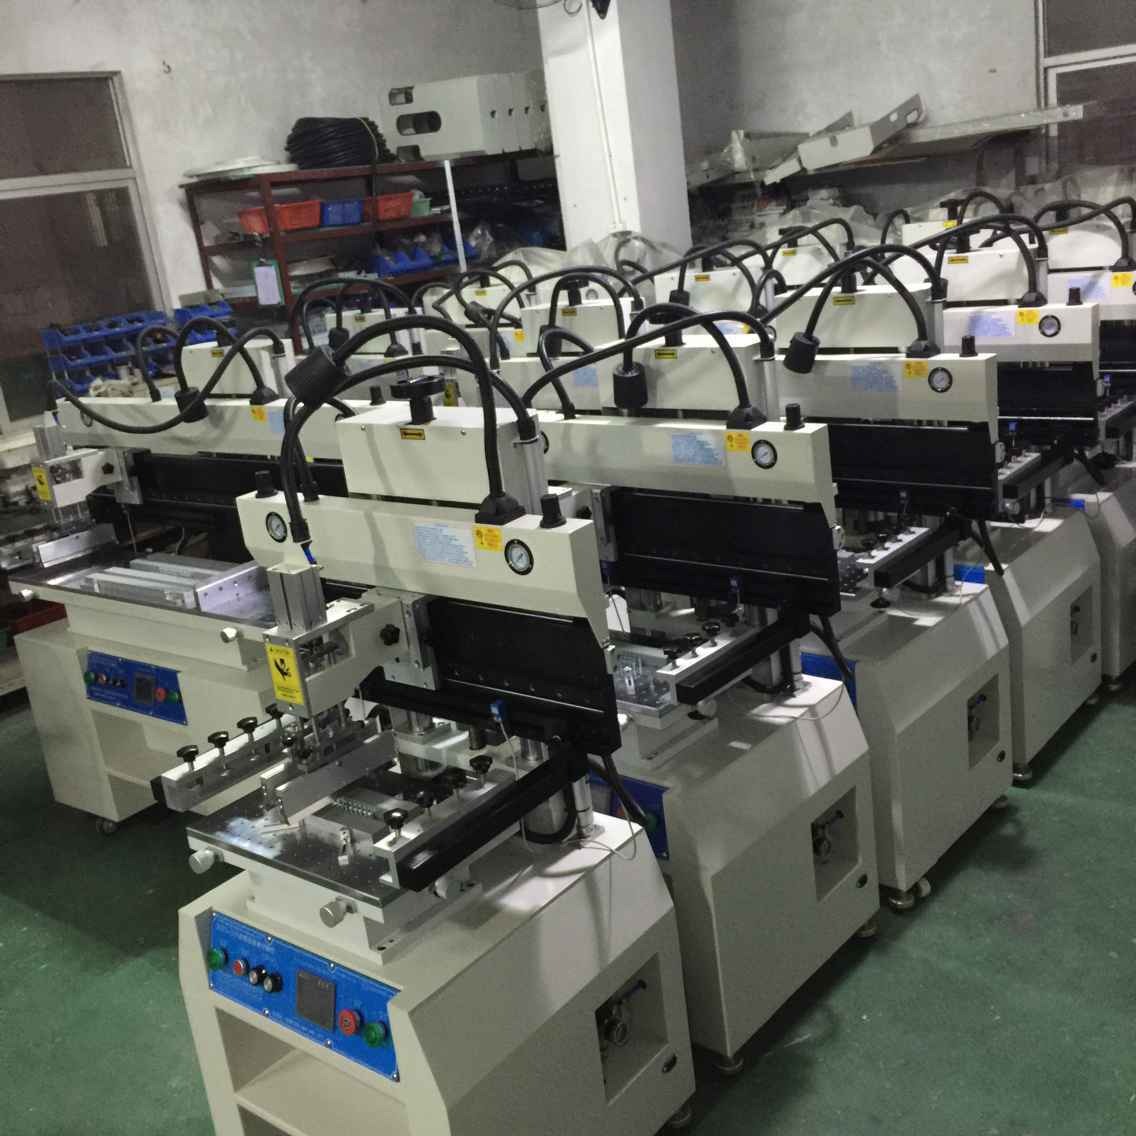 琦琦自动化    QQYS-3260半自动锡膏印刷机  PCB锡高印刷机  多功能印刷机